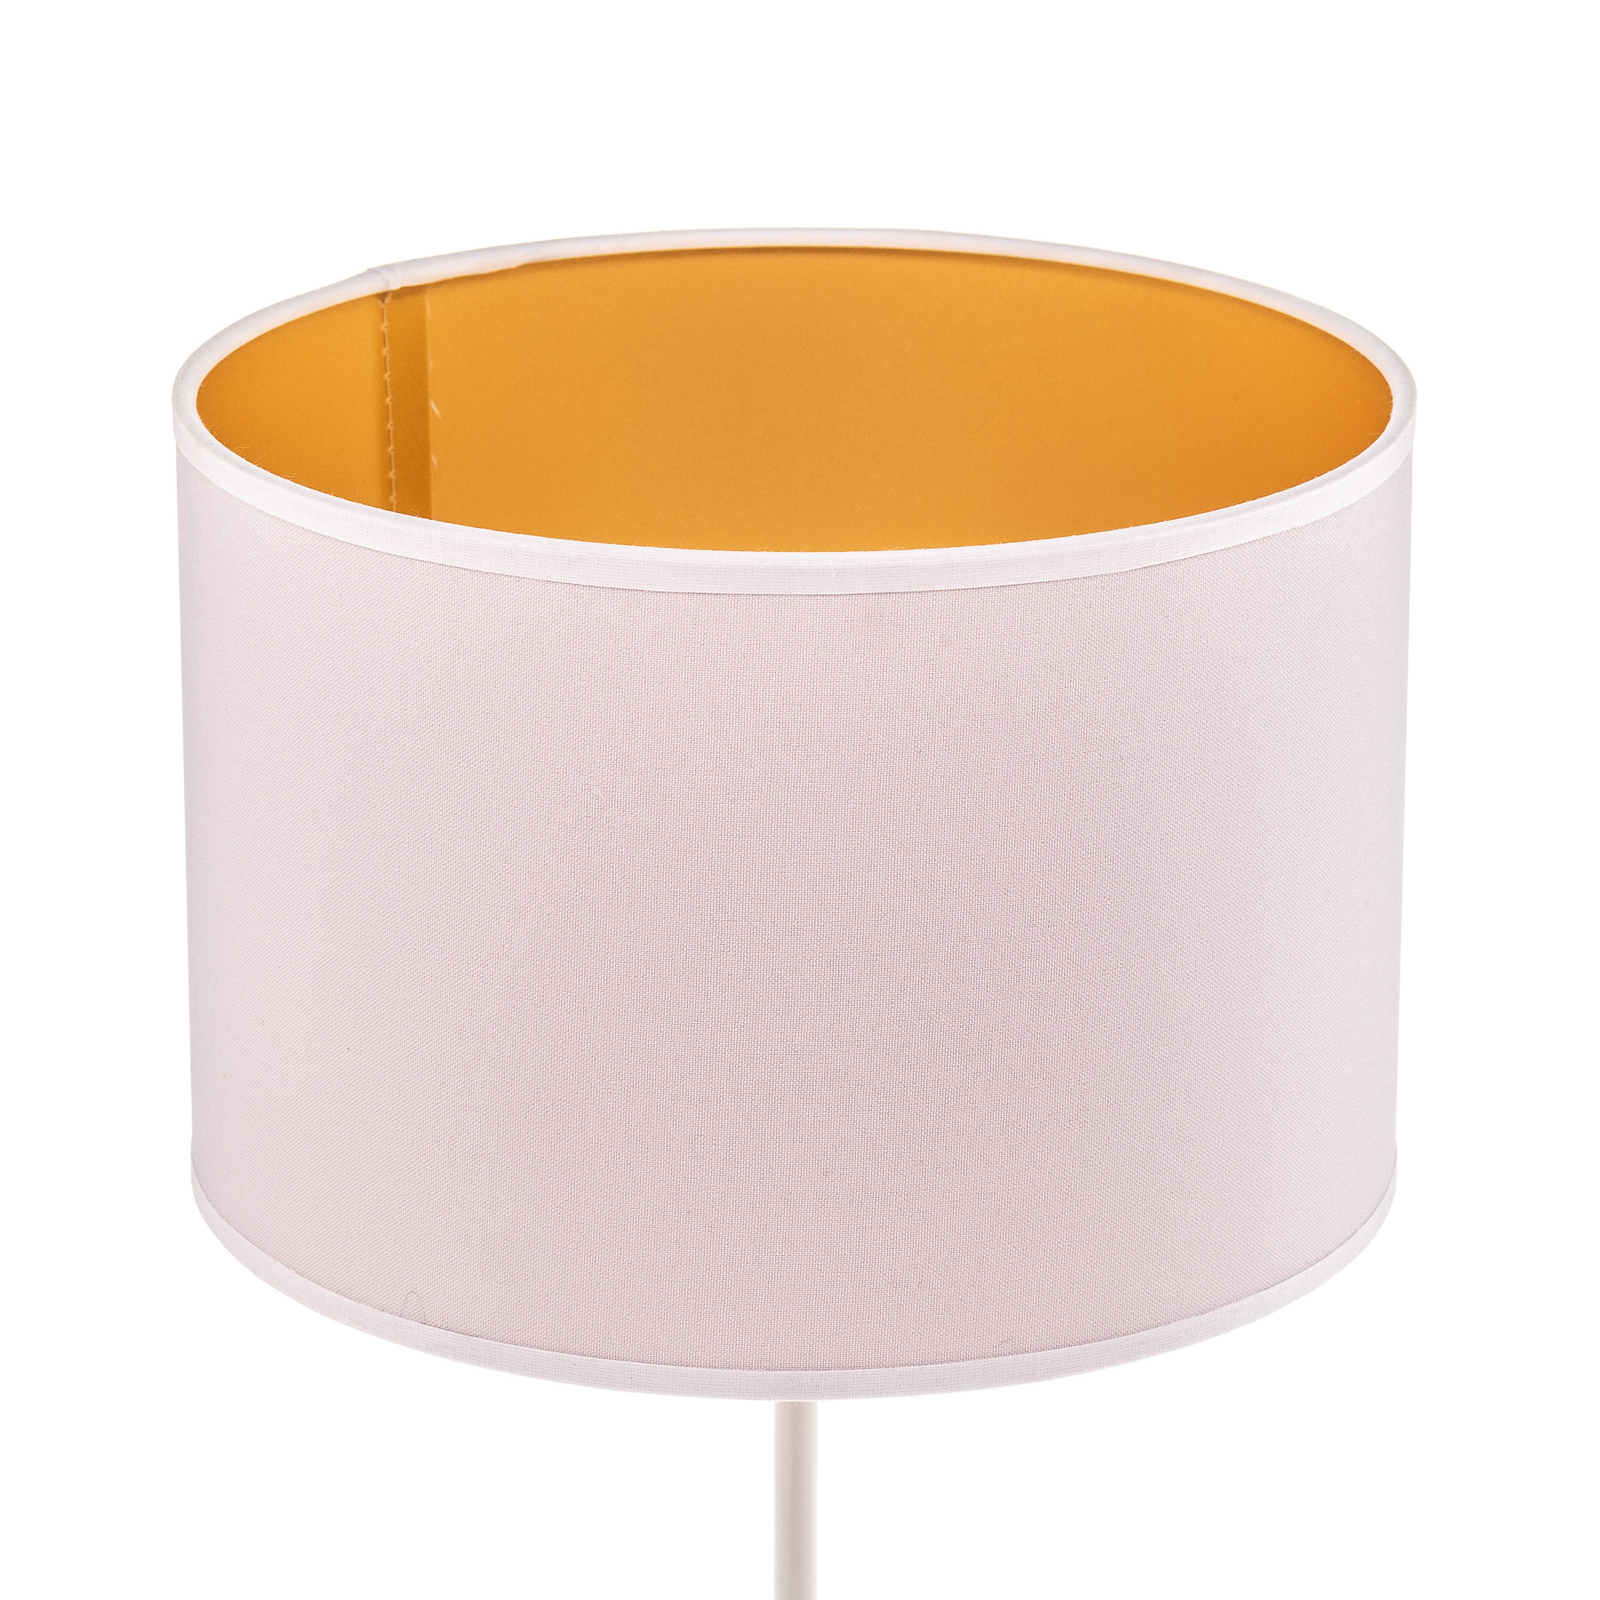 Lampa stołowa Roller biała/złota, wysokość 50cm